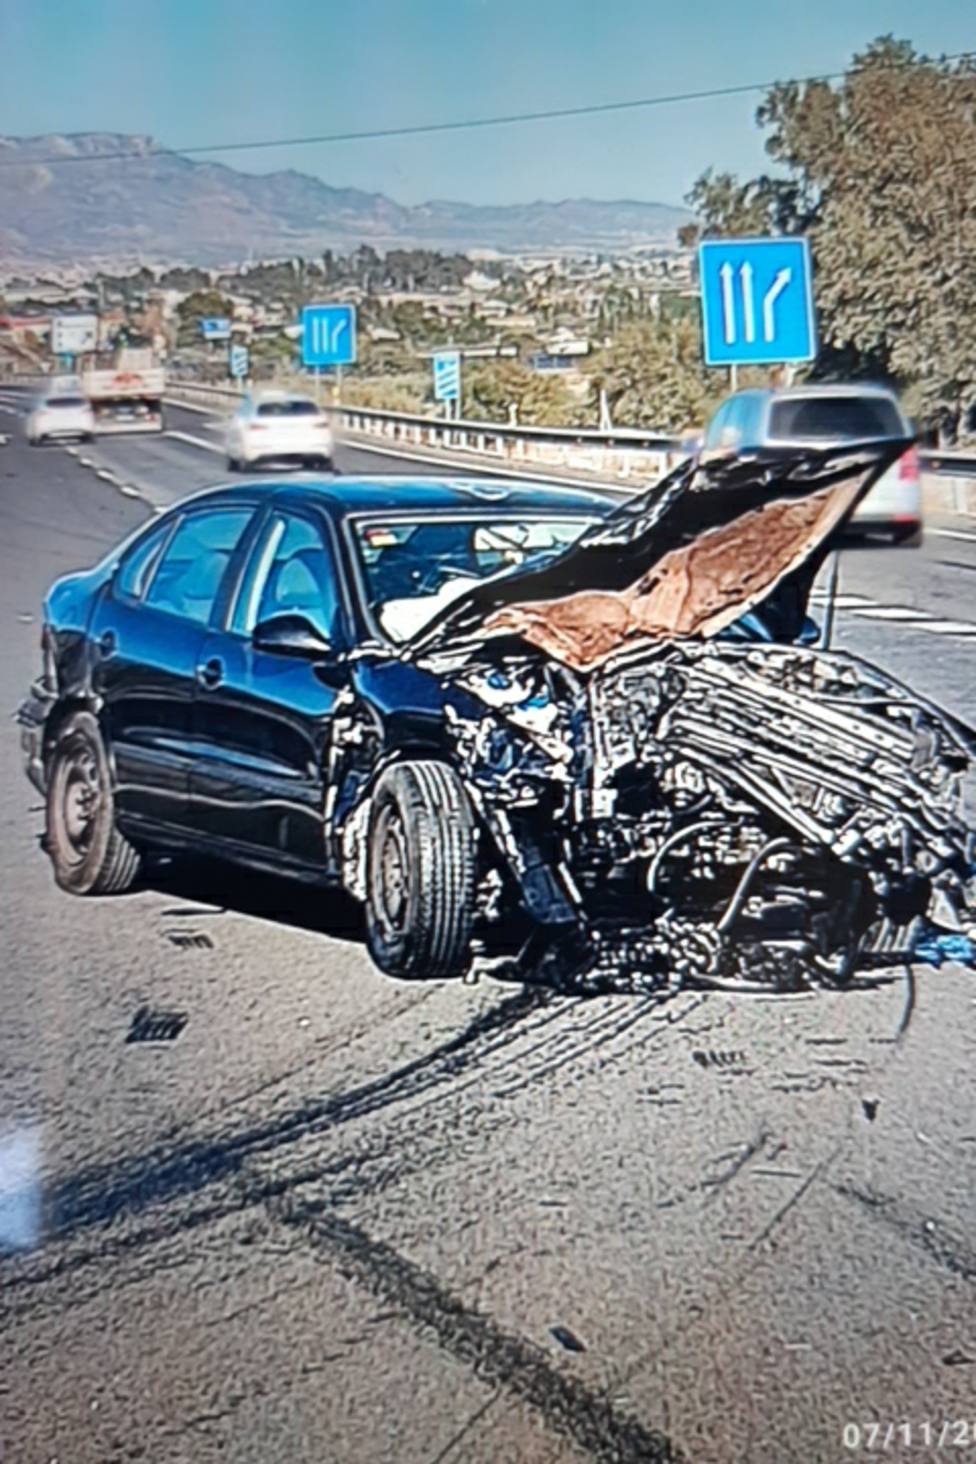 Servicios de emergencias atienden a una mujer herida en accidente de tráfico en Lorca